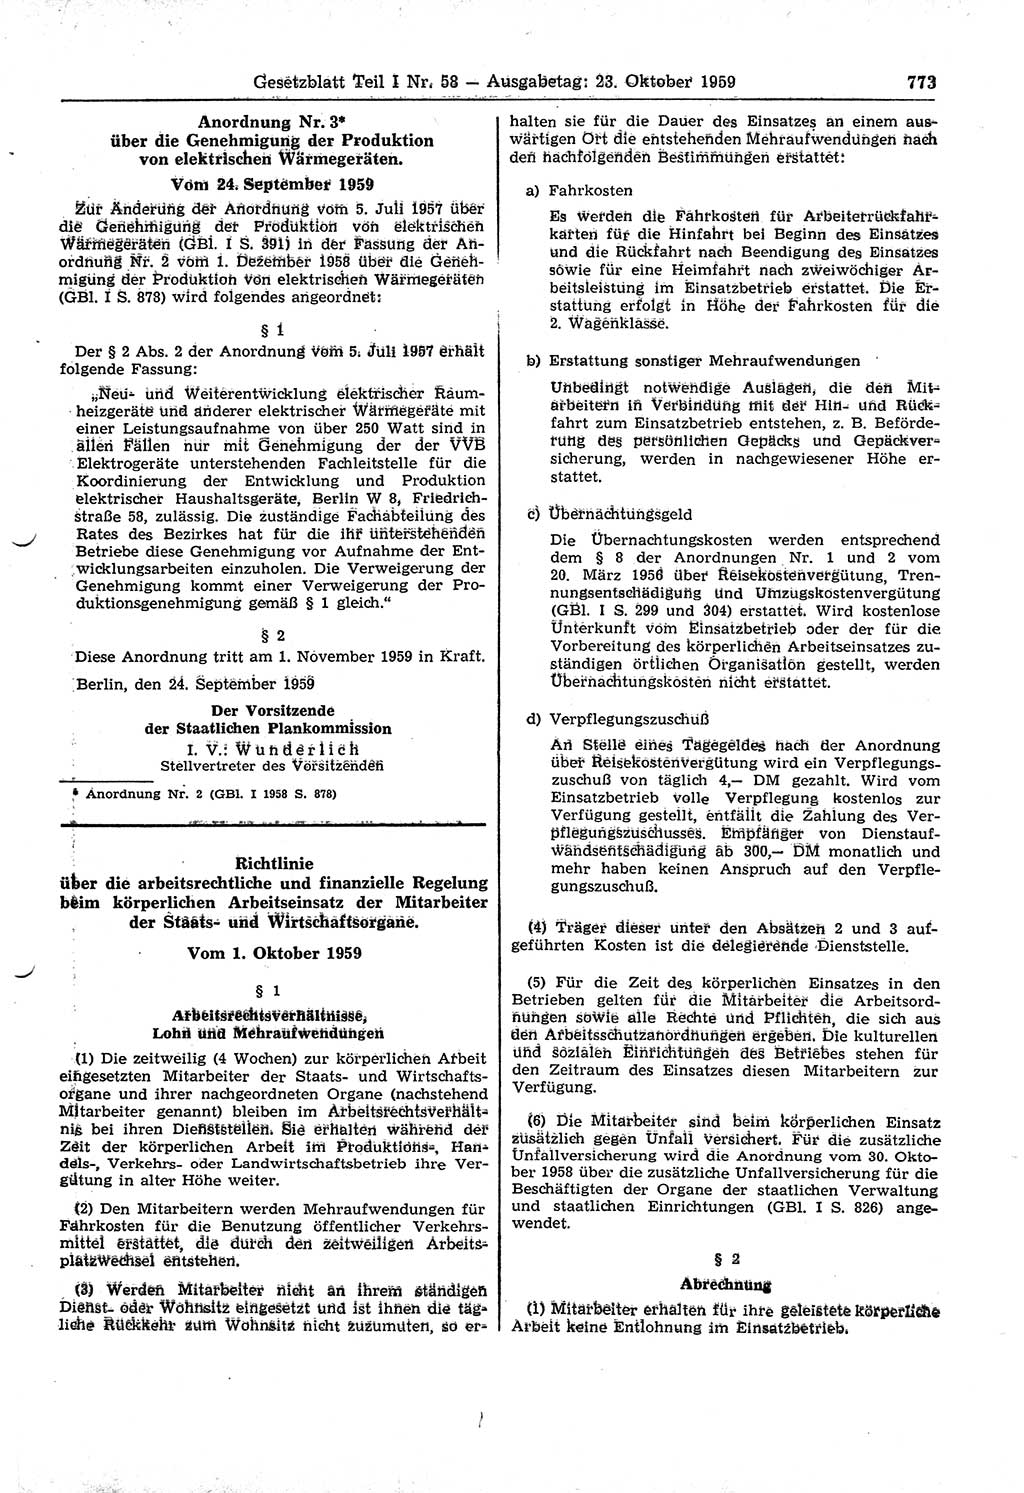 Gesetzblatt (GBl.) der Deutschen Demokratischen Republik (DDR) Teil Ⅰ 1959, Seite 773 (GBl. DDR Ⅰ 1959, S. 773)